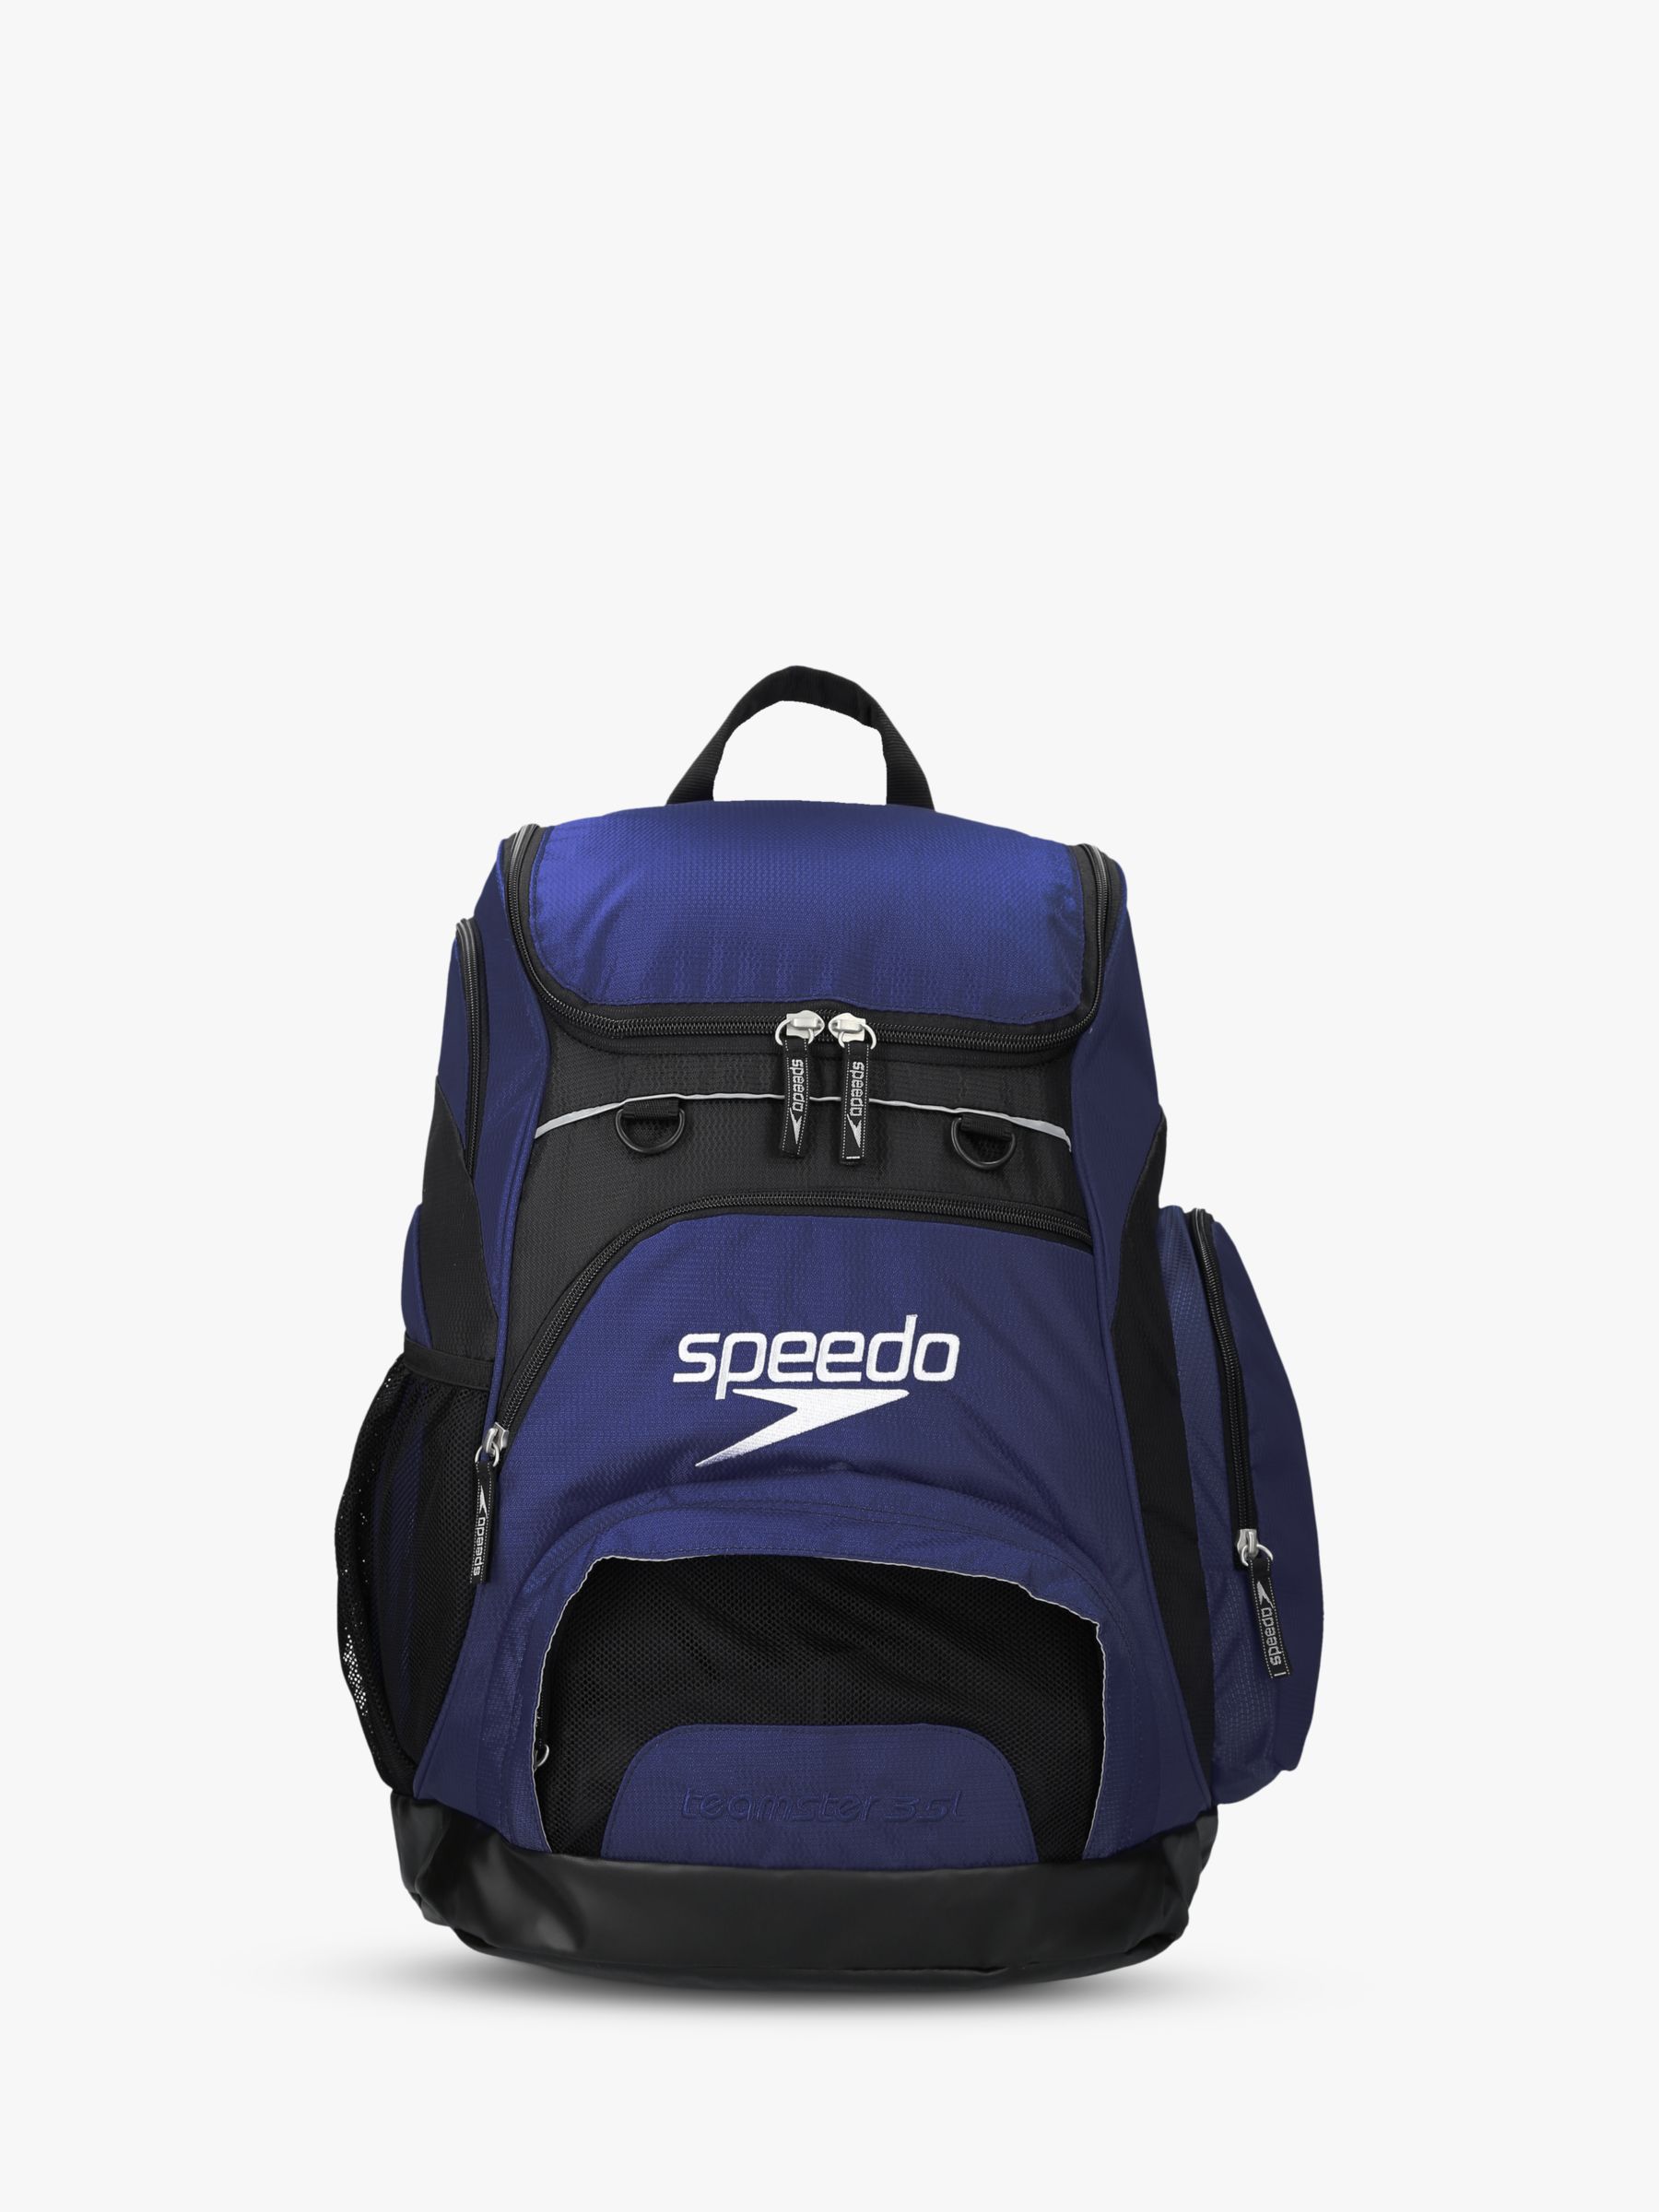 Speedo Teamster Swim Backpack, Navy at John Lewis & Partners